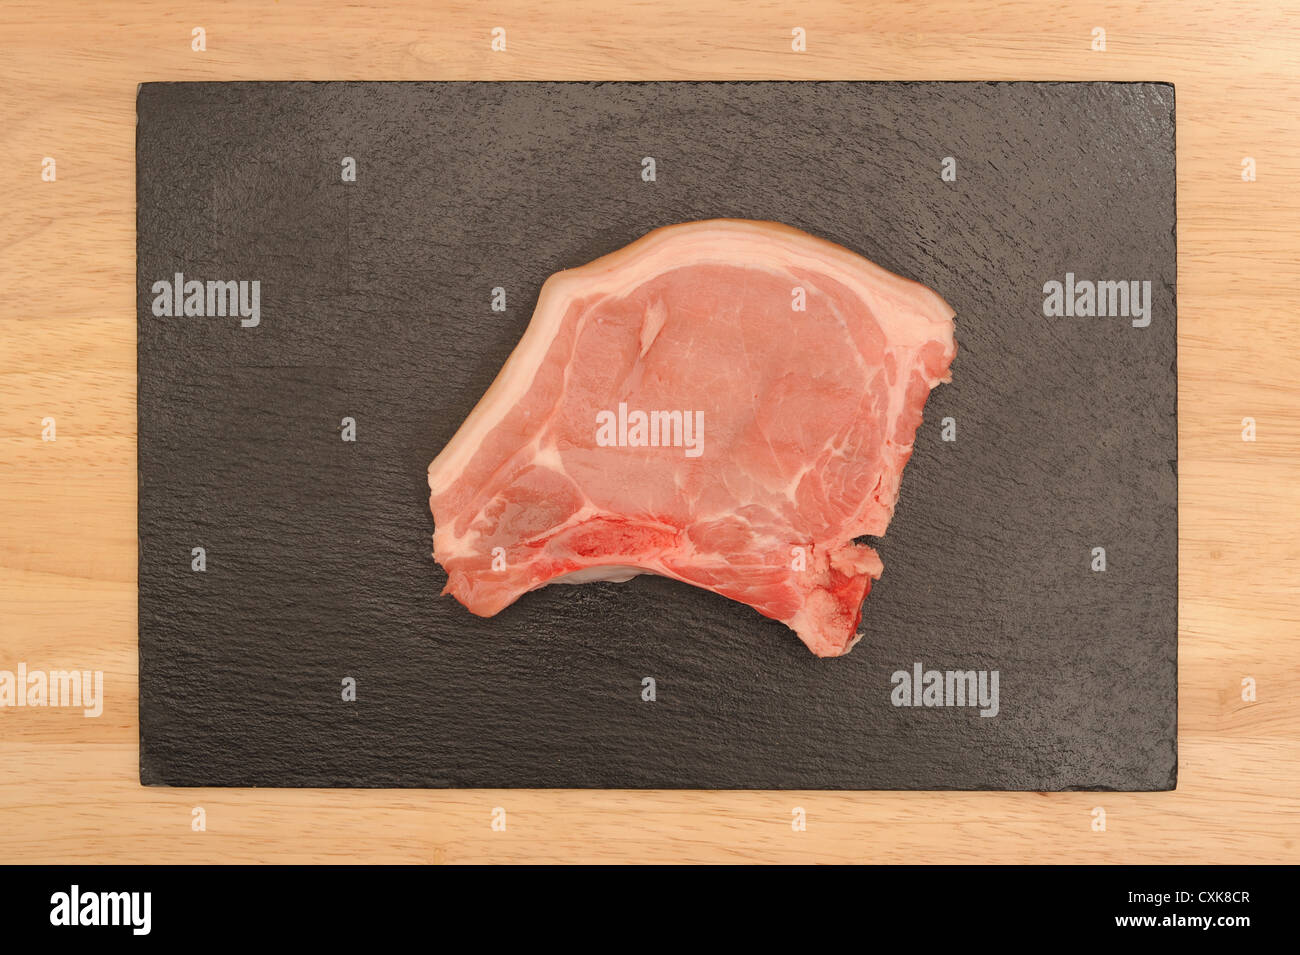 Braciola di maiale immagini e fotografie stock ad alta risoluzione - Alamy